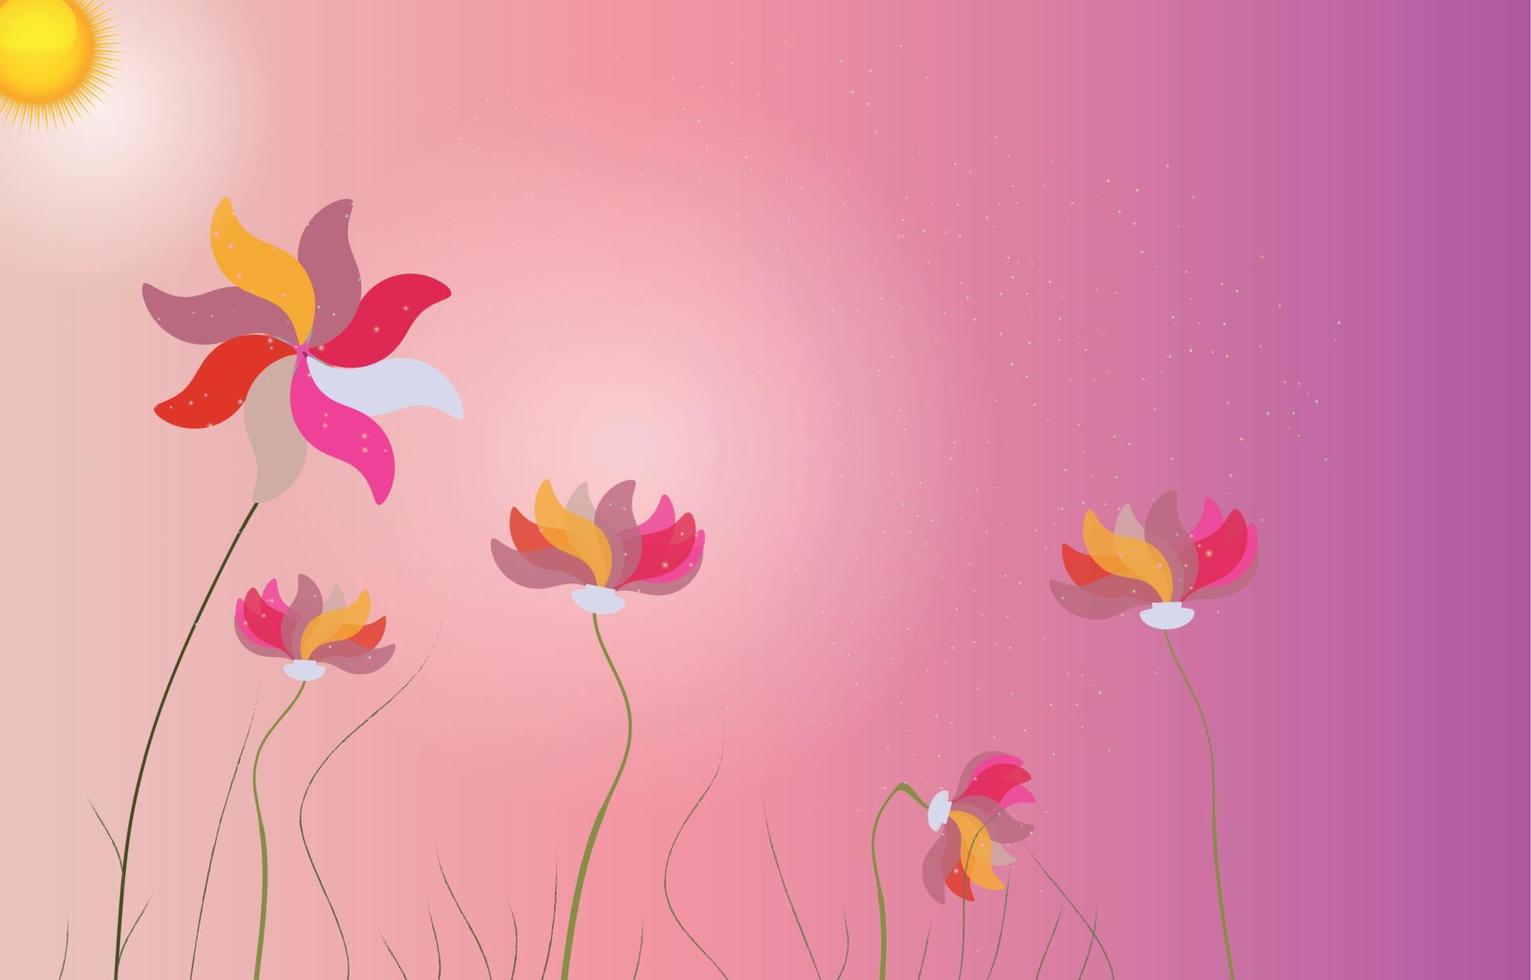 abstrait coloré avec des fleurs. illustration vectorielle vecteur